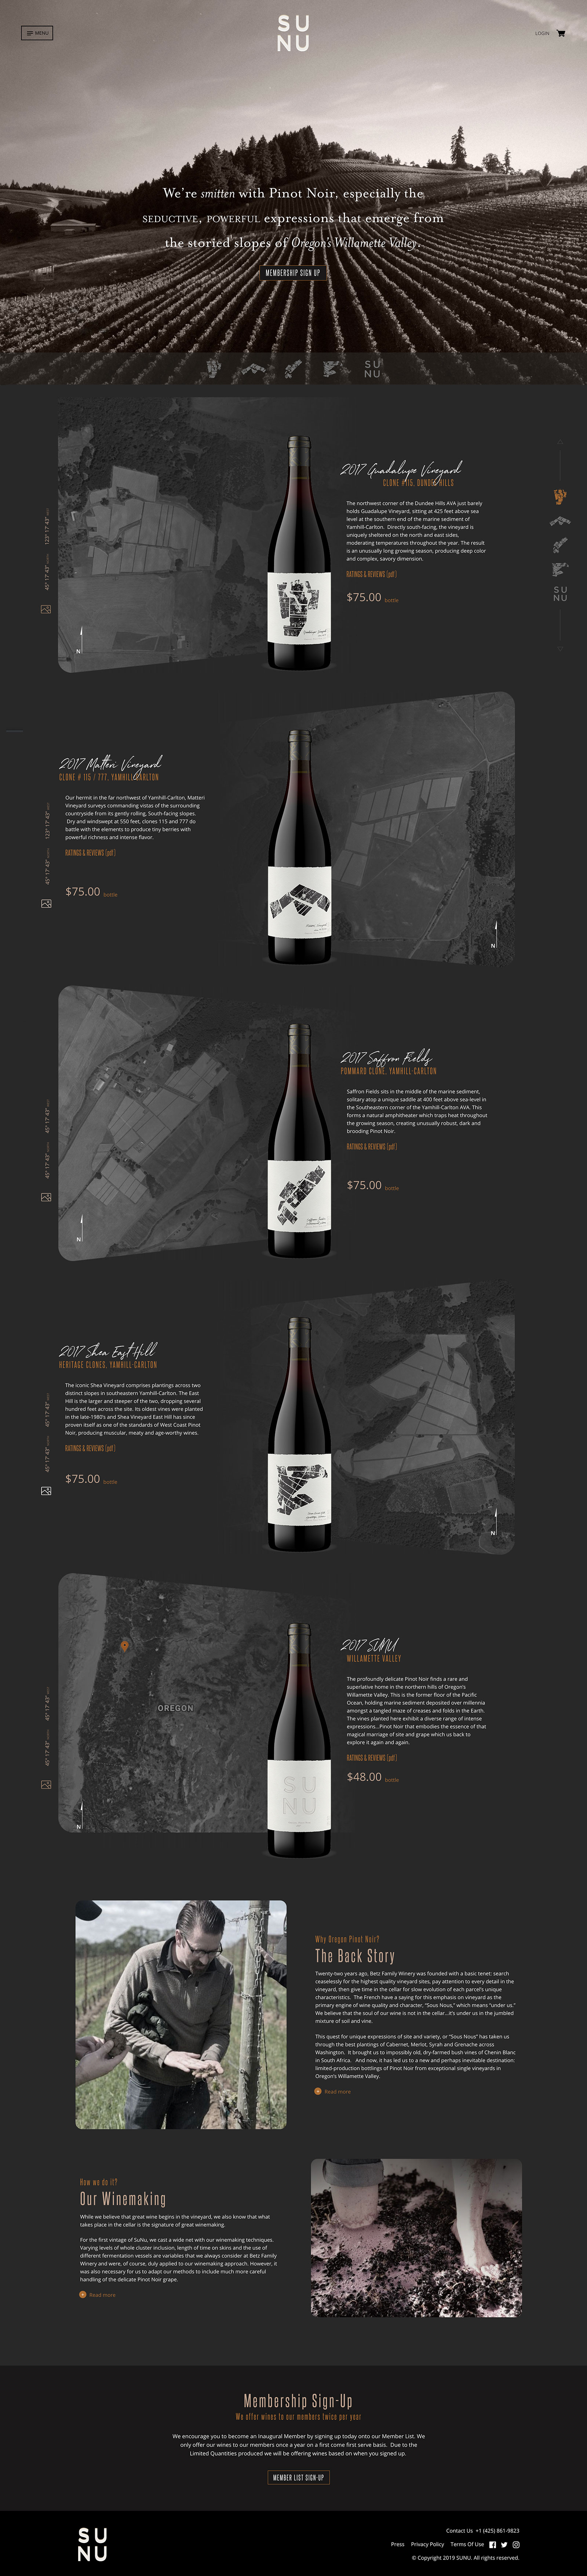 Wine Works - SUNU Design